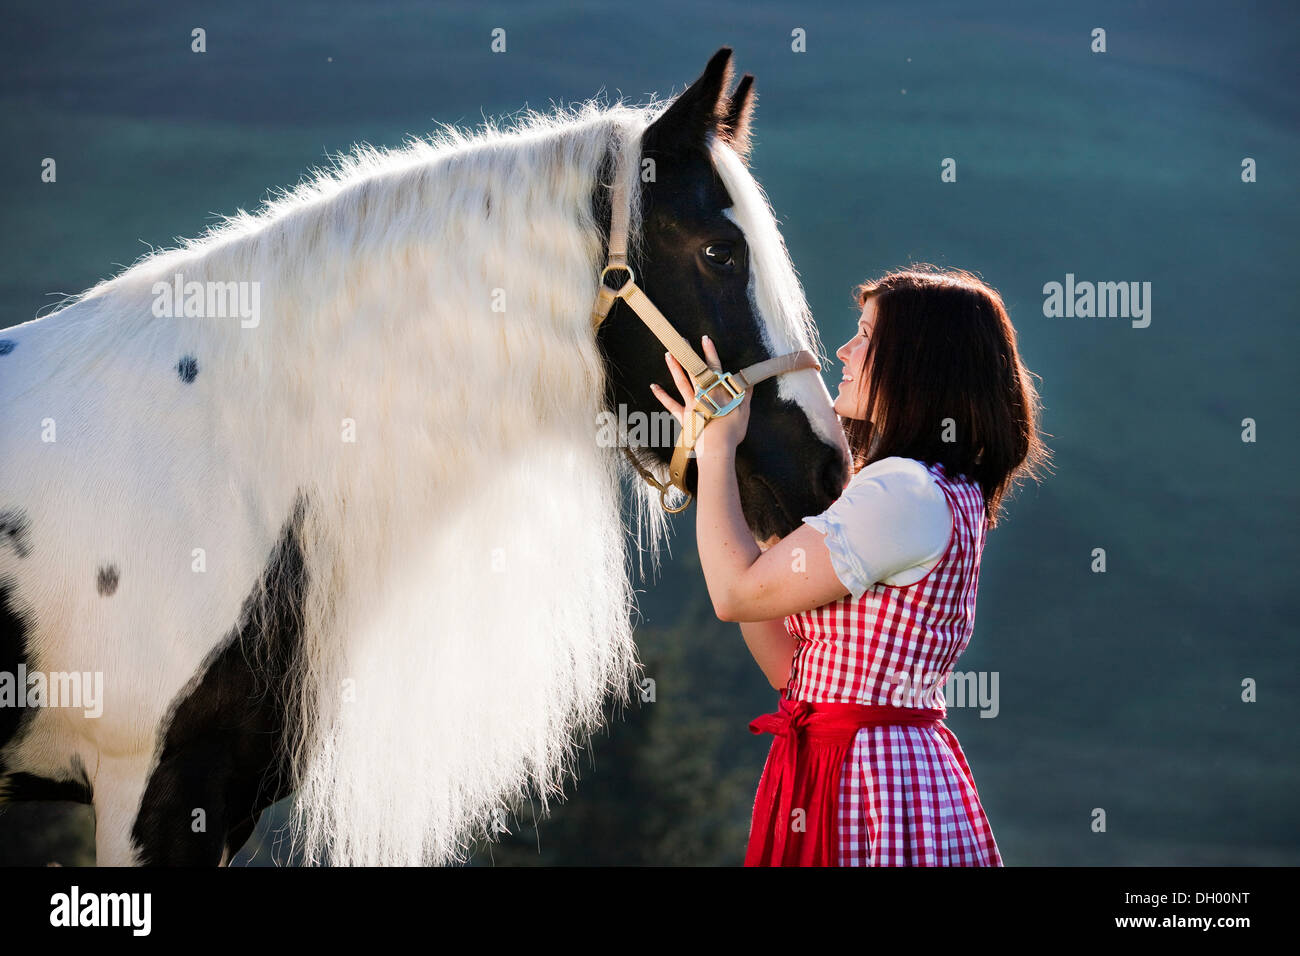 Giovane donna che indossa un vestito con grembiule cuddling con uno zingaro Vanner o Tinker cavallo, pinto, bianco e nero, Tirolo del nord, Austria, Europa Foto Stock